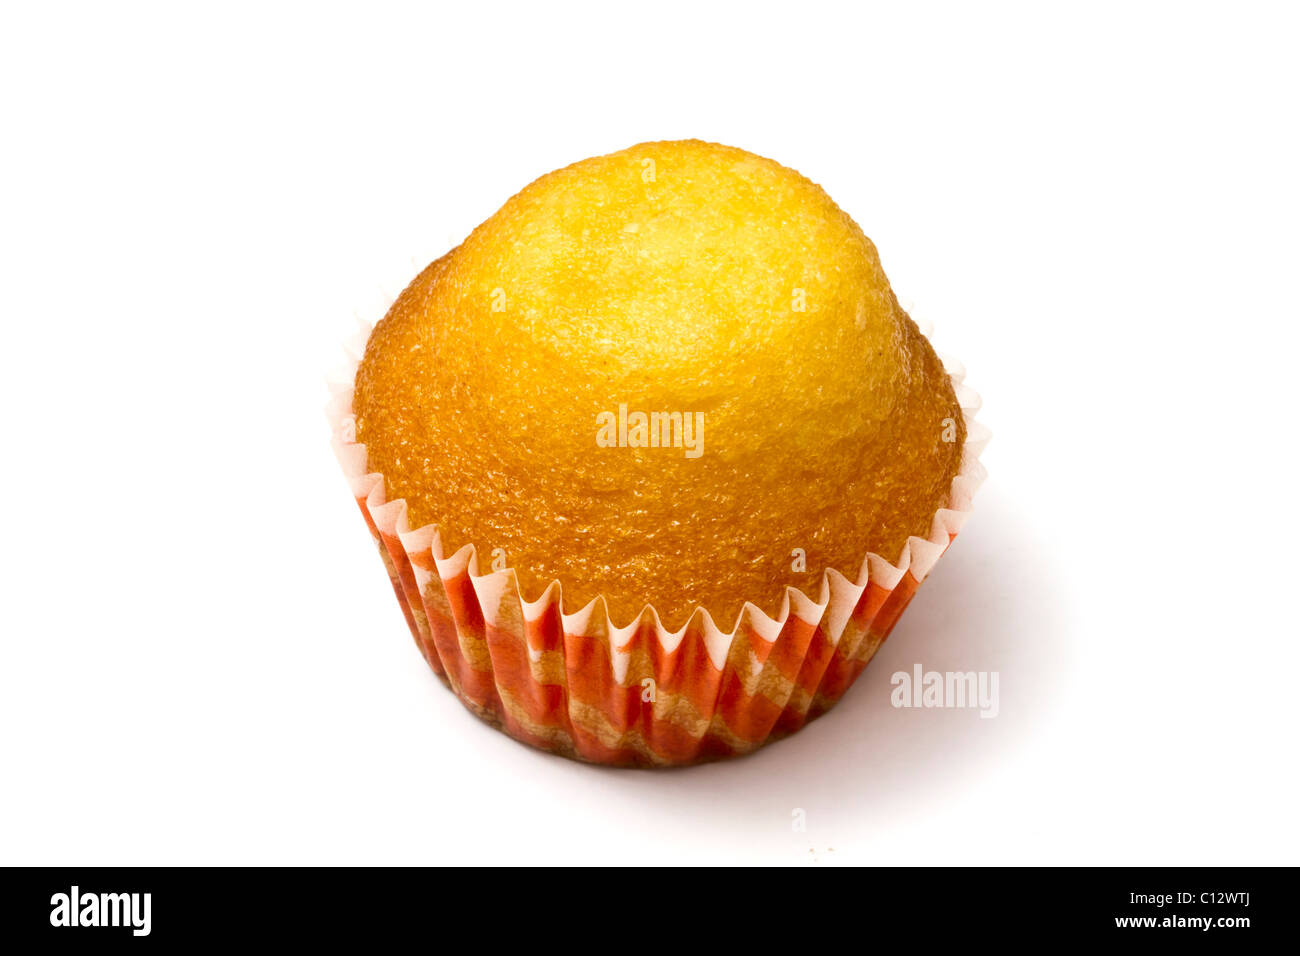 Lemon muffin isolated on white background Stock Photo - Alamy